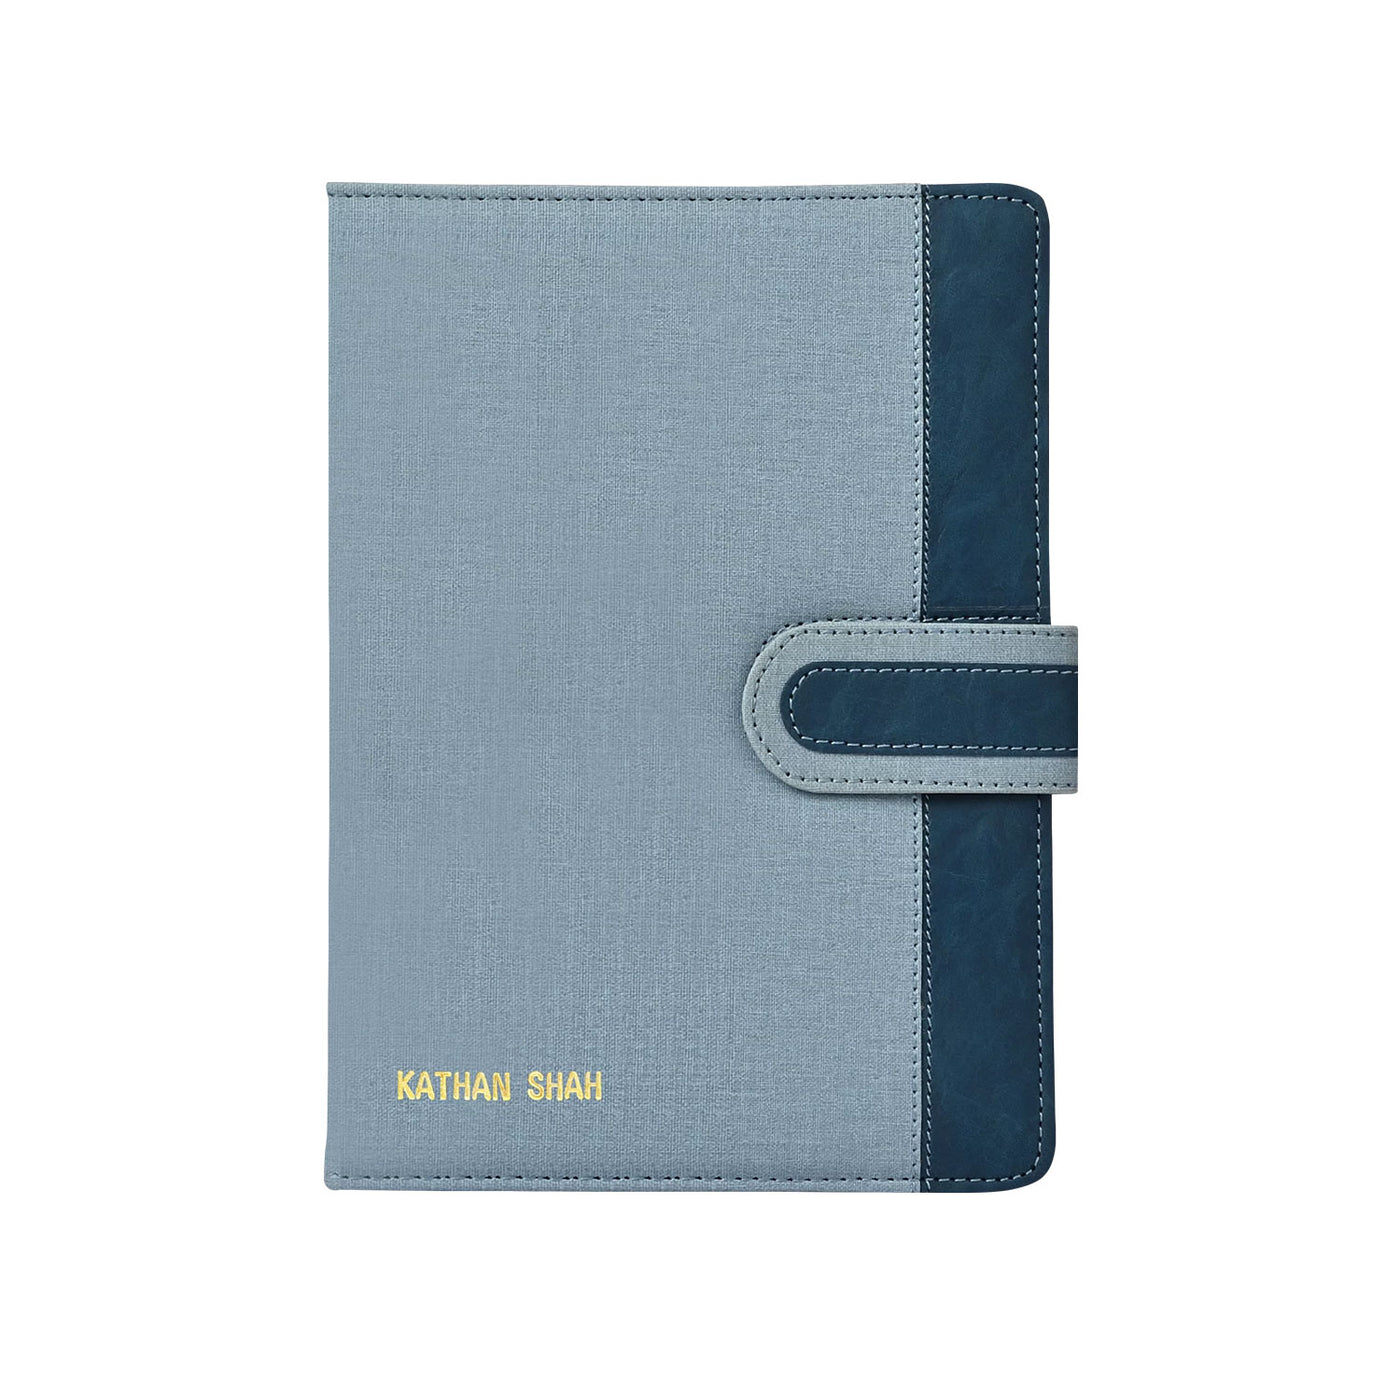 Scholar Regent Blue Notebook - B5 Ruled 3